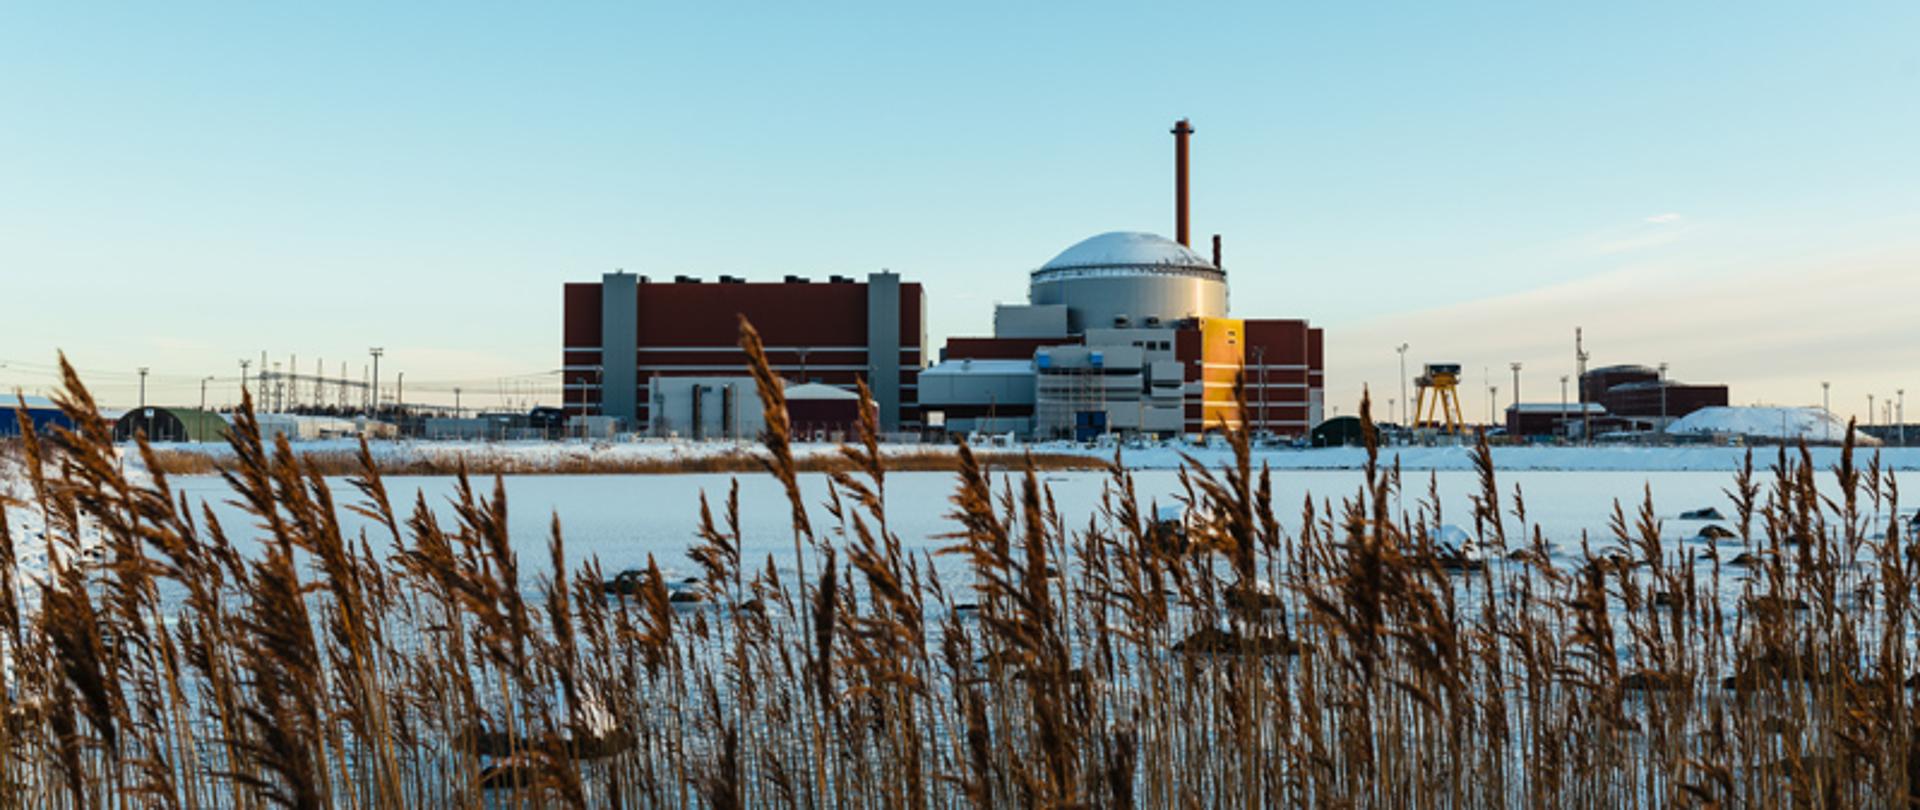 Elektrownia jądrowa Oilkuloto. Zima - przed elektrownią pole zasypane śniegiem. Na pierwszym planie kłosy pożółkłych traw.